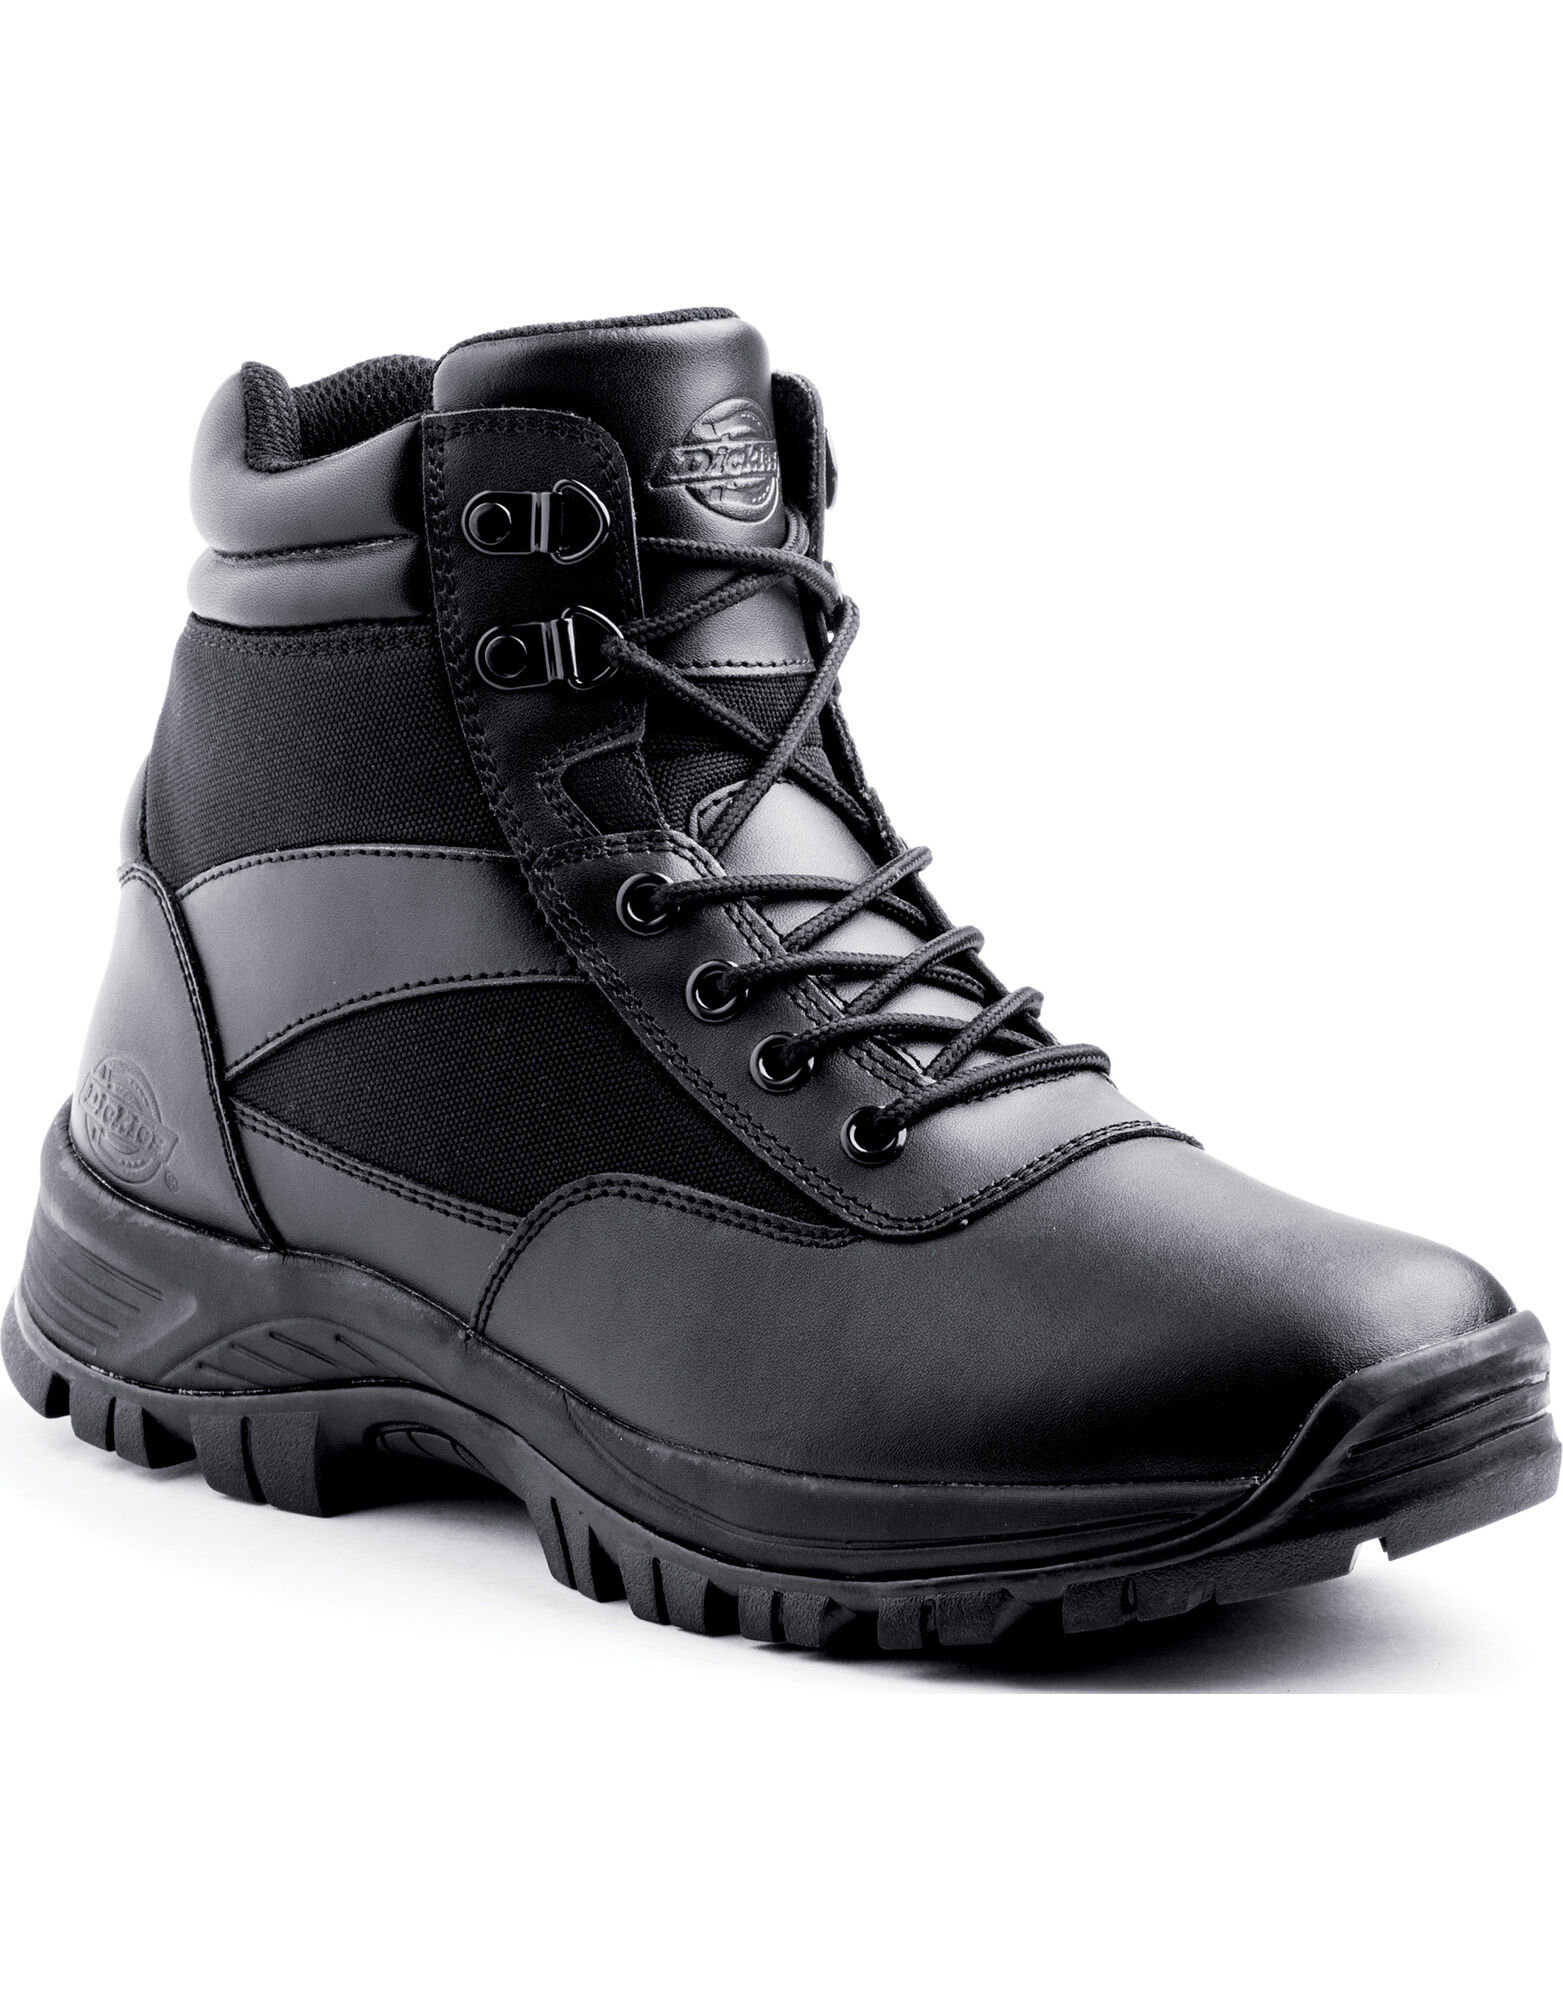 dickies black work boots